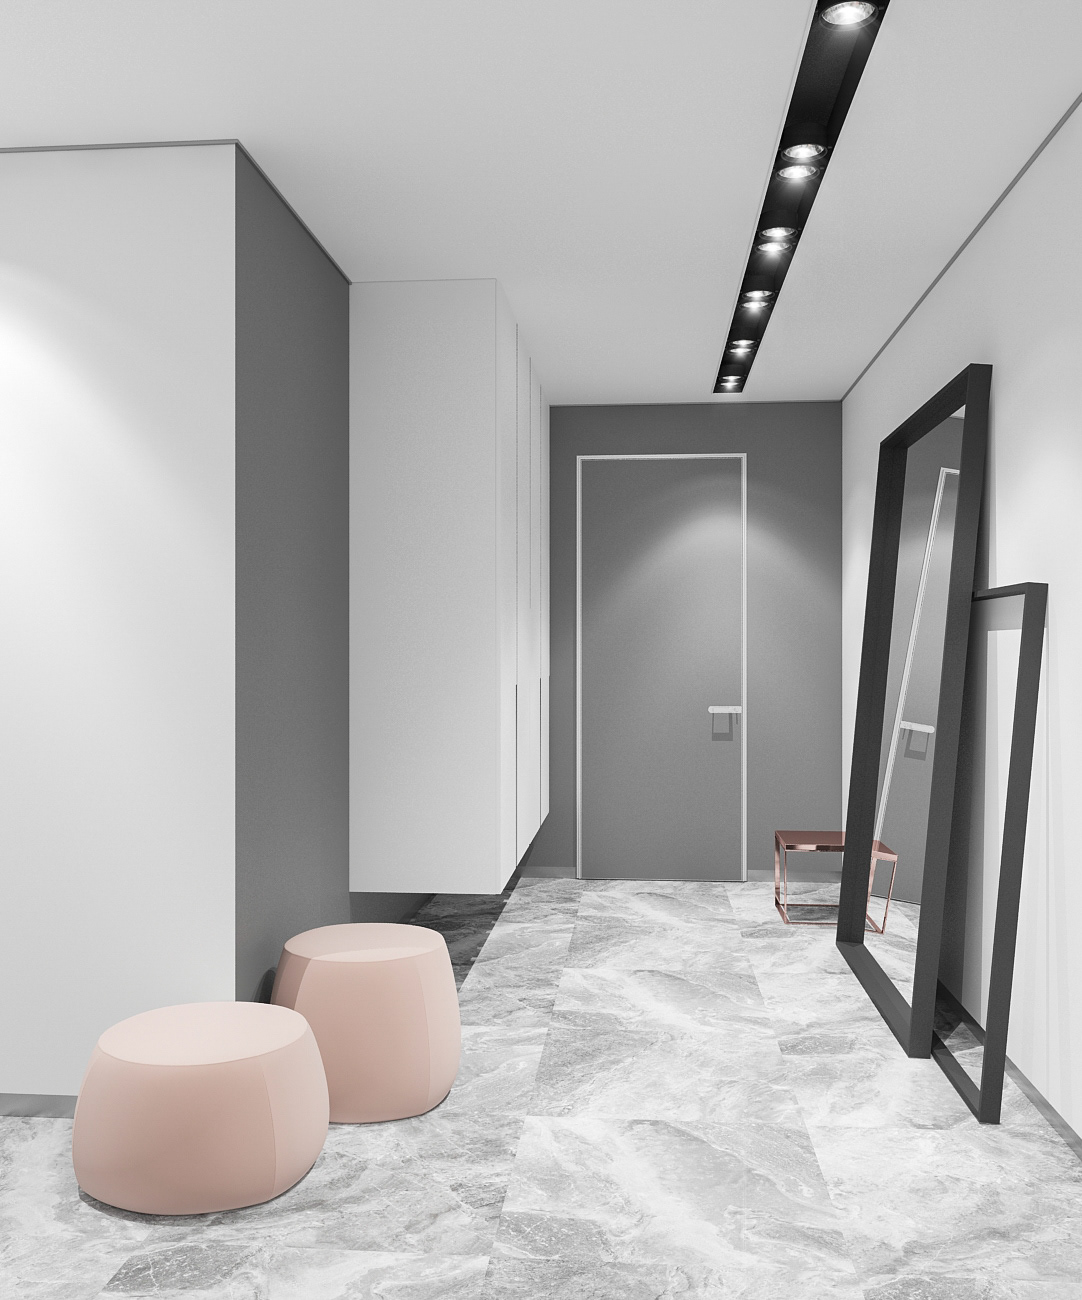 Minimal interior Pink marble bathroom lavatory hallway design interior